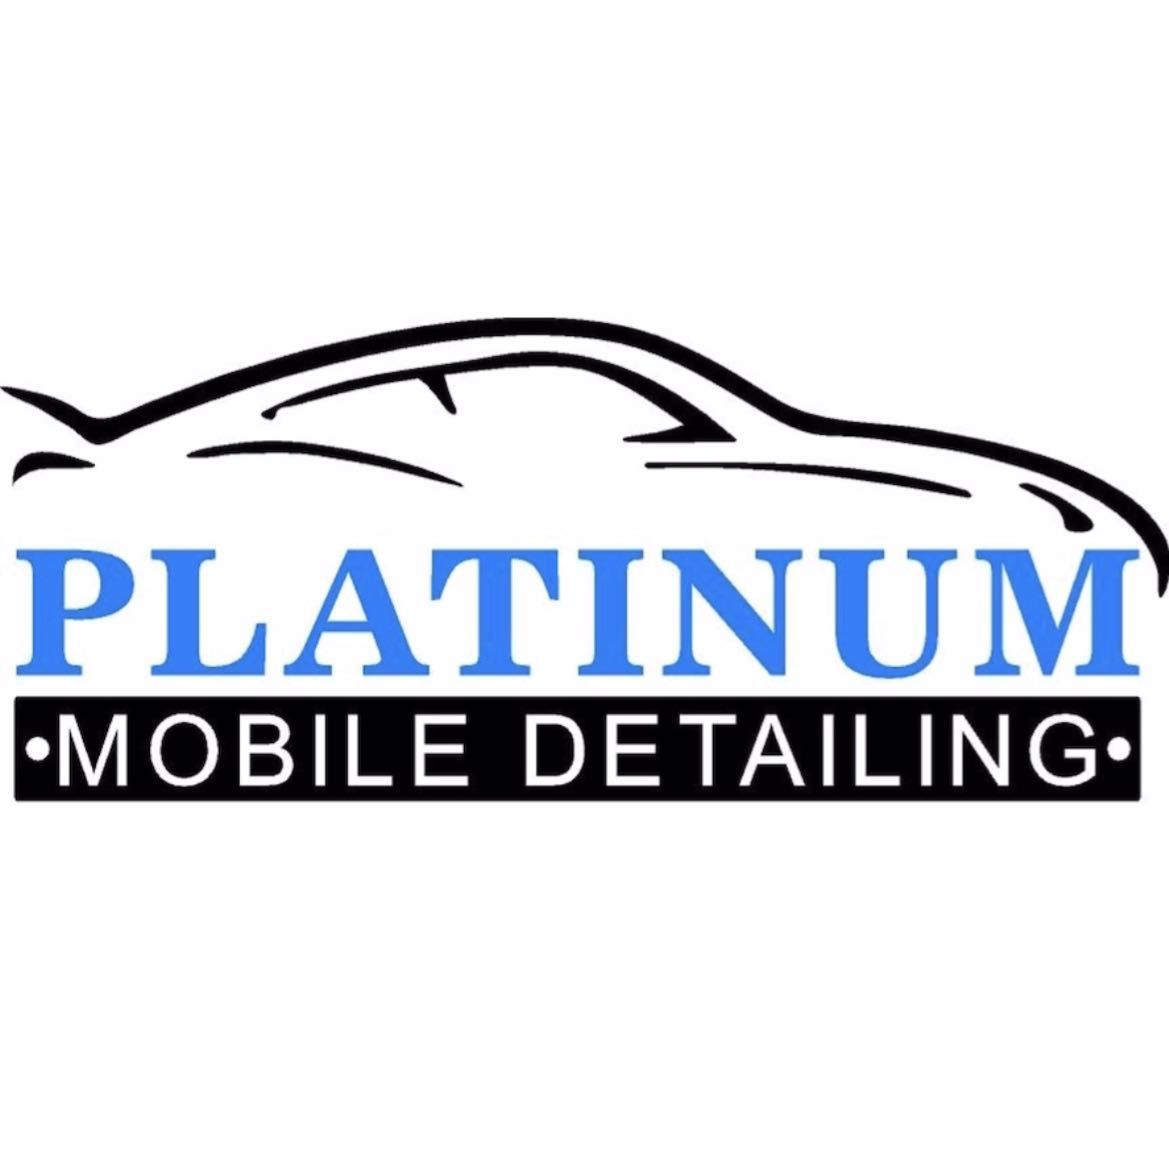 Platinum Mobile Detailing, Gainesville, 30501